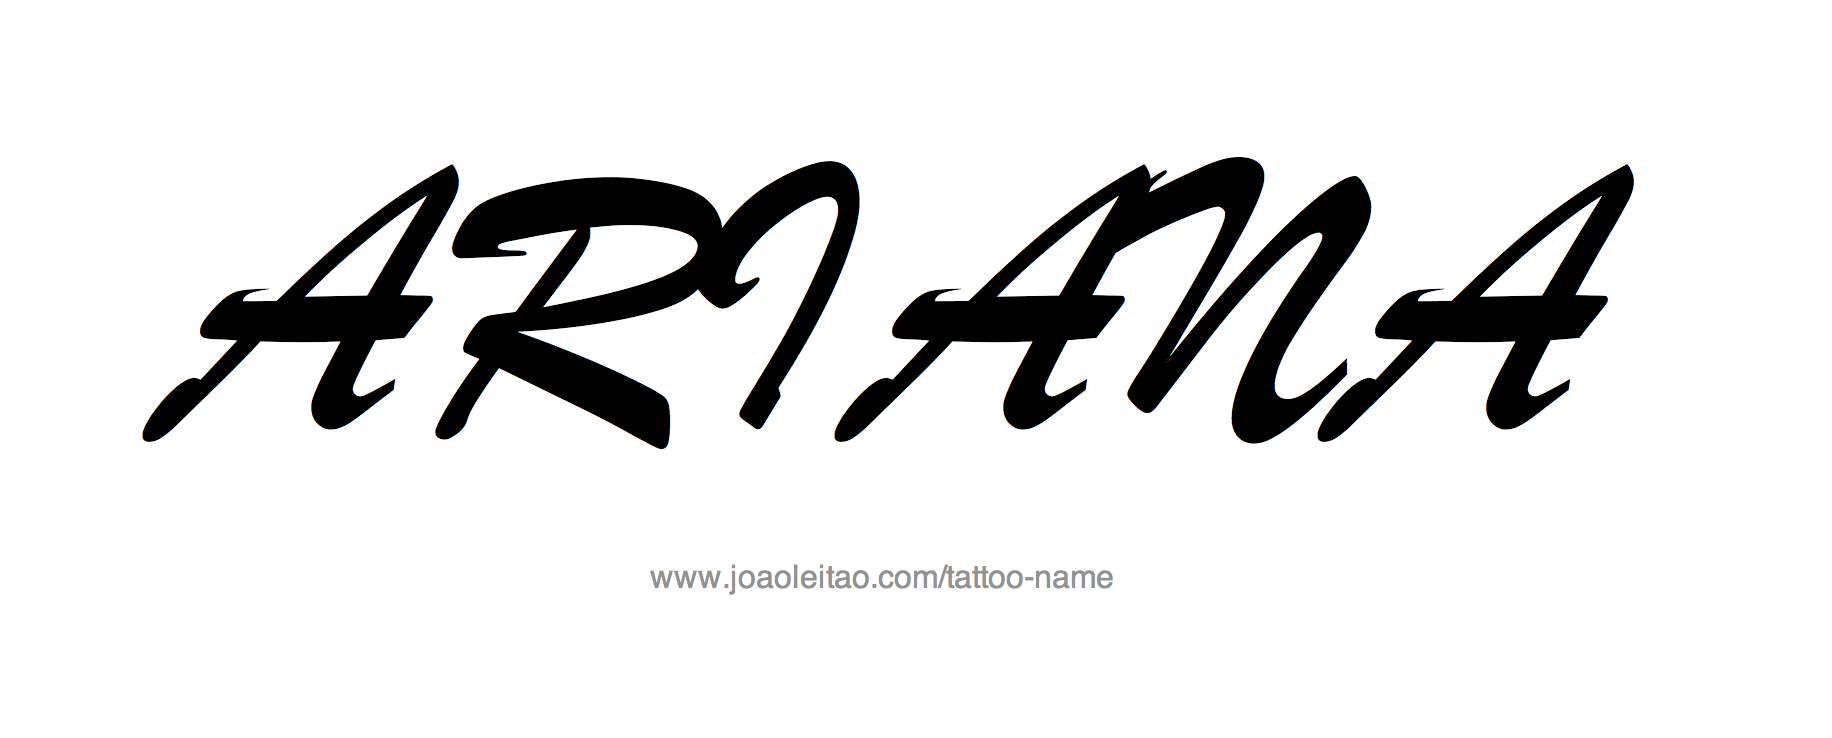 Tattoo Design Name Ariana 